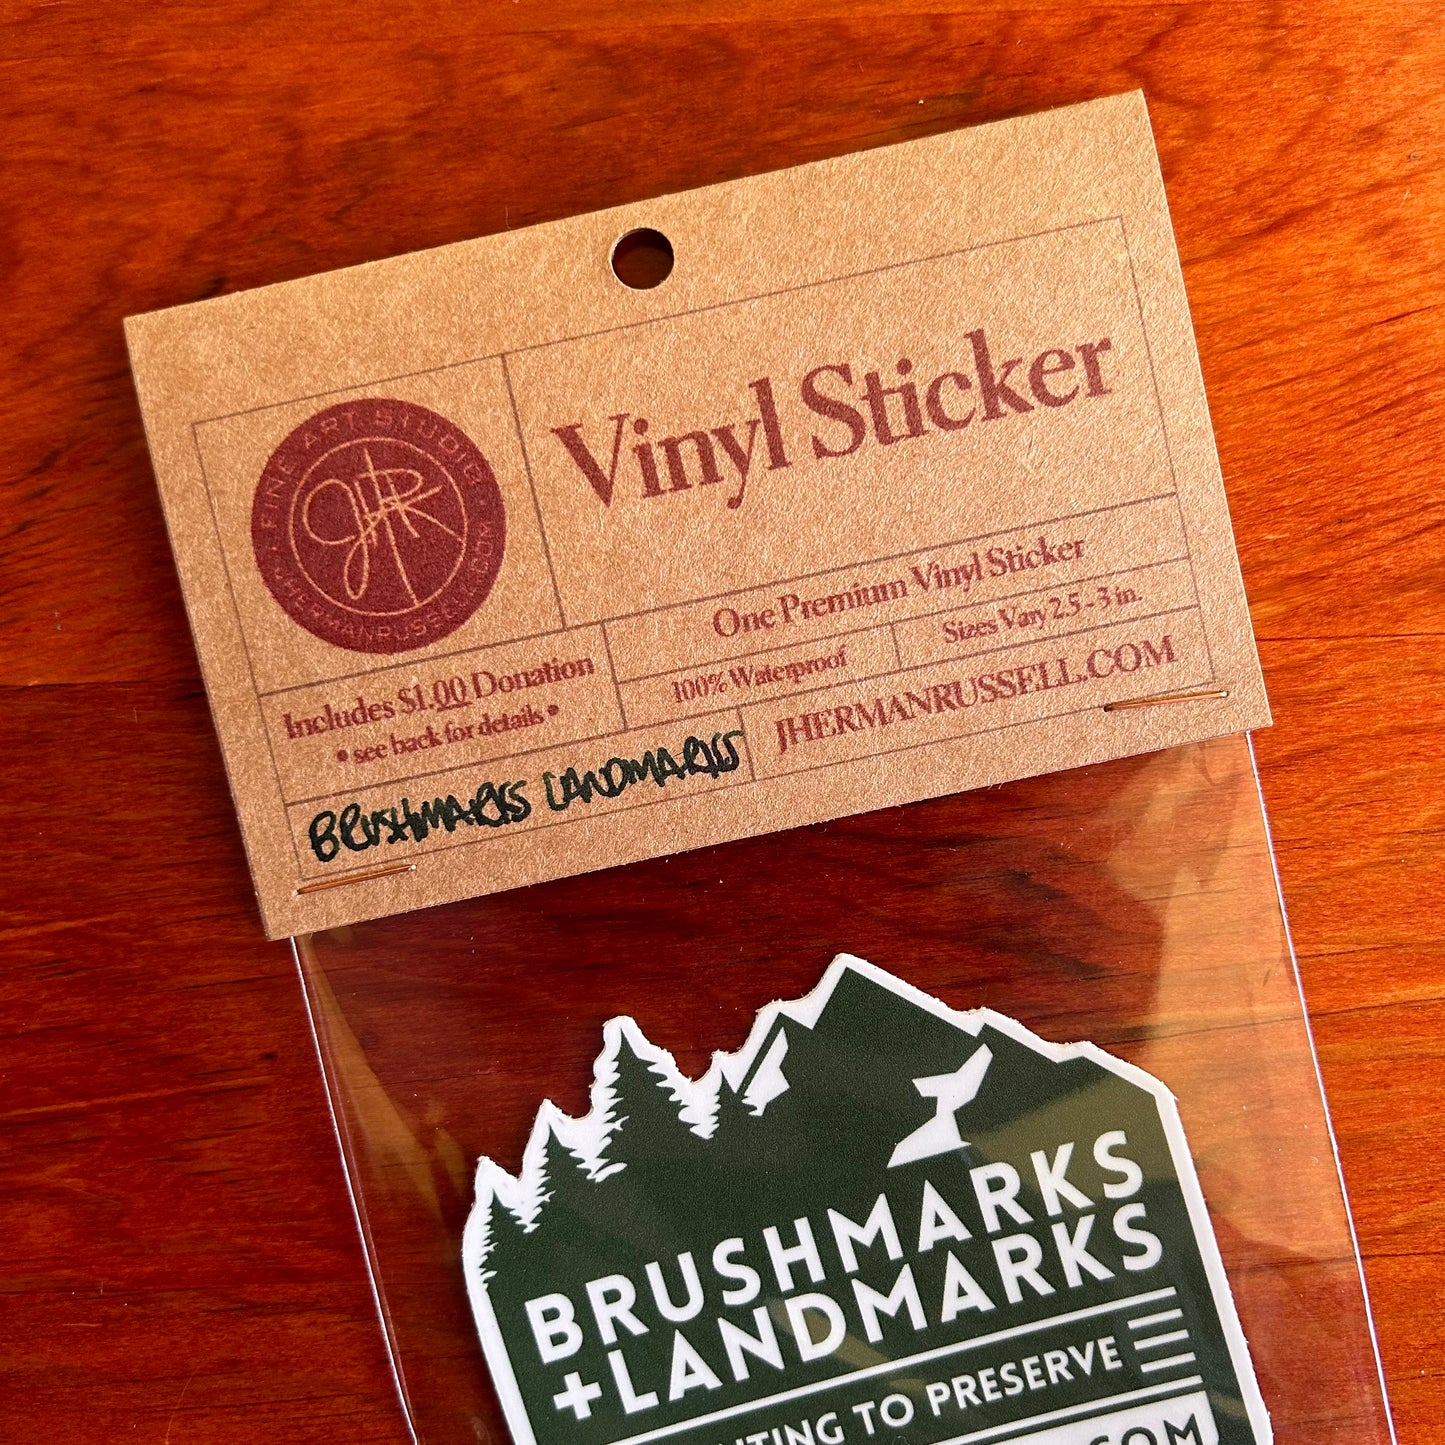 Brushmarks + Landmarks Sticker